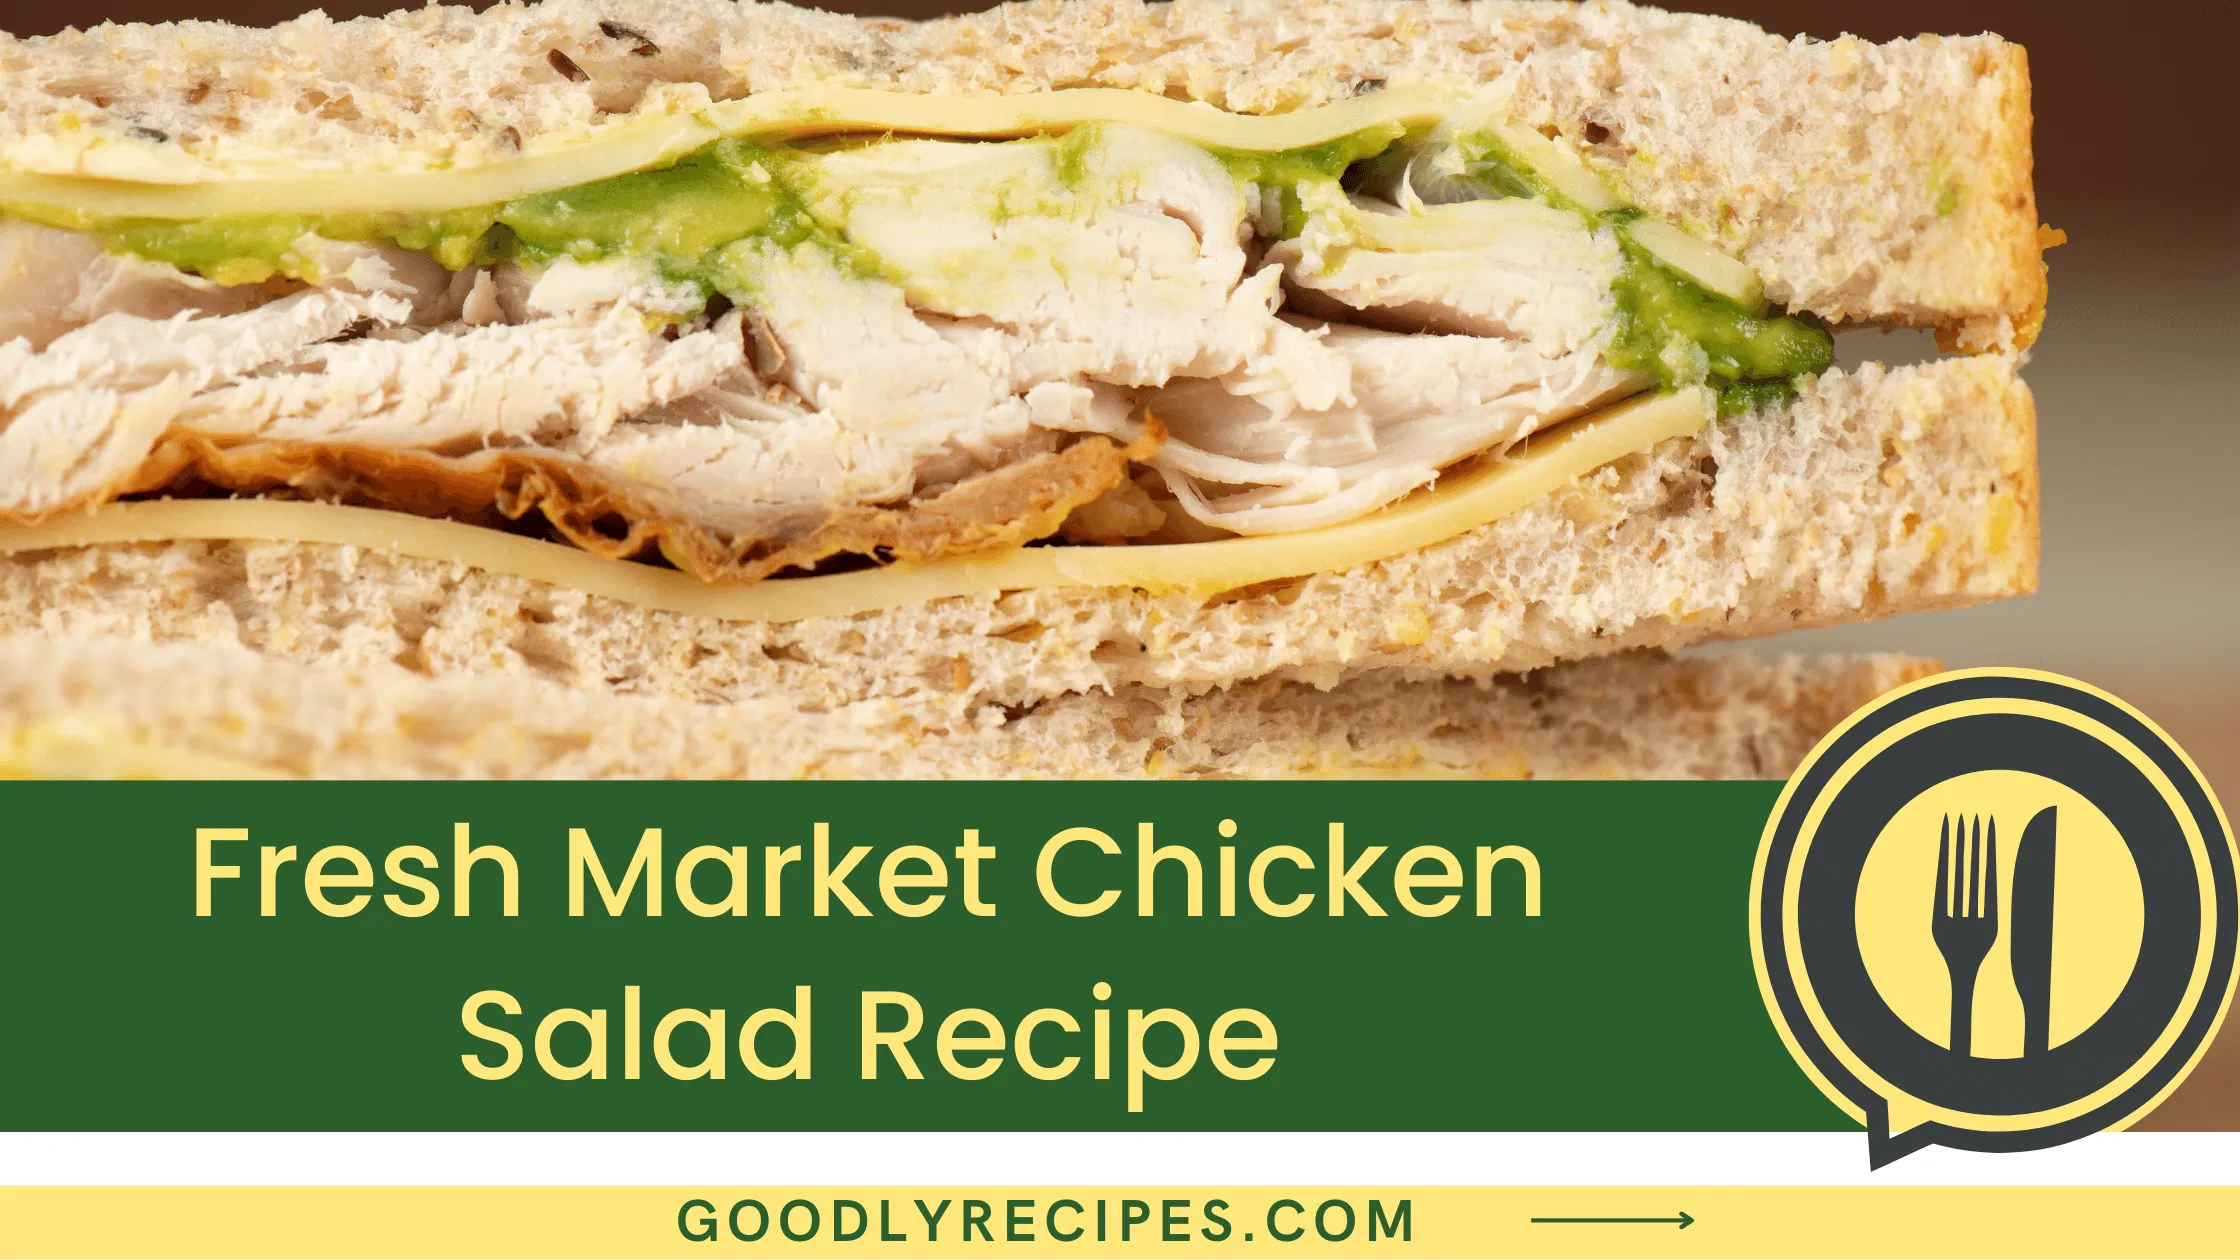 What is Fresh Market Chicken Salad?